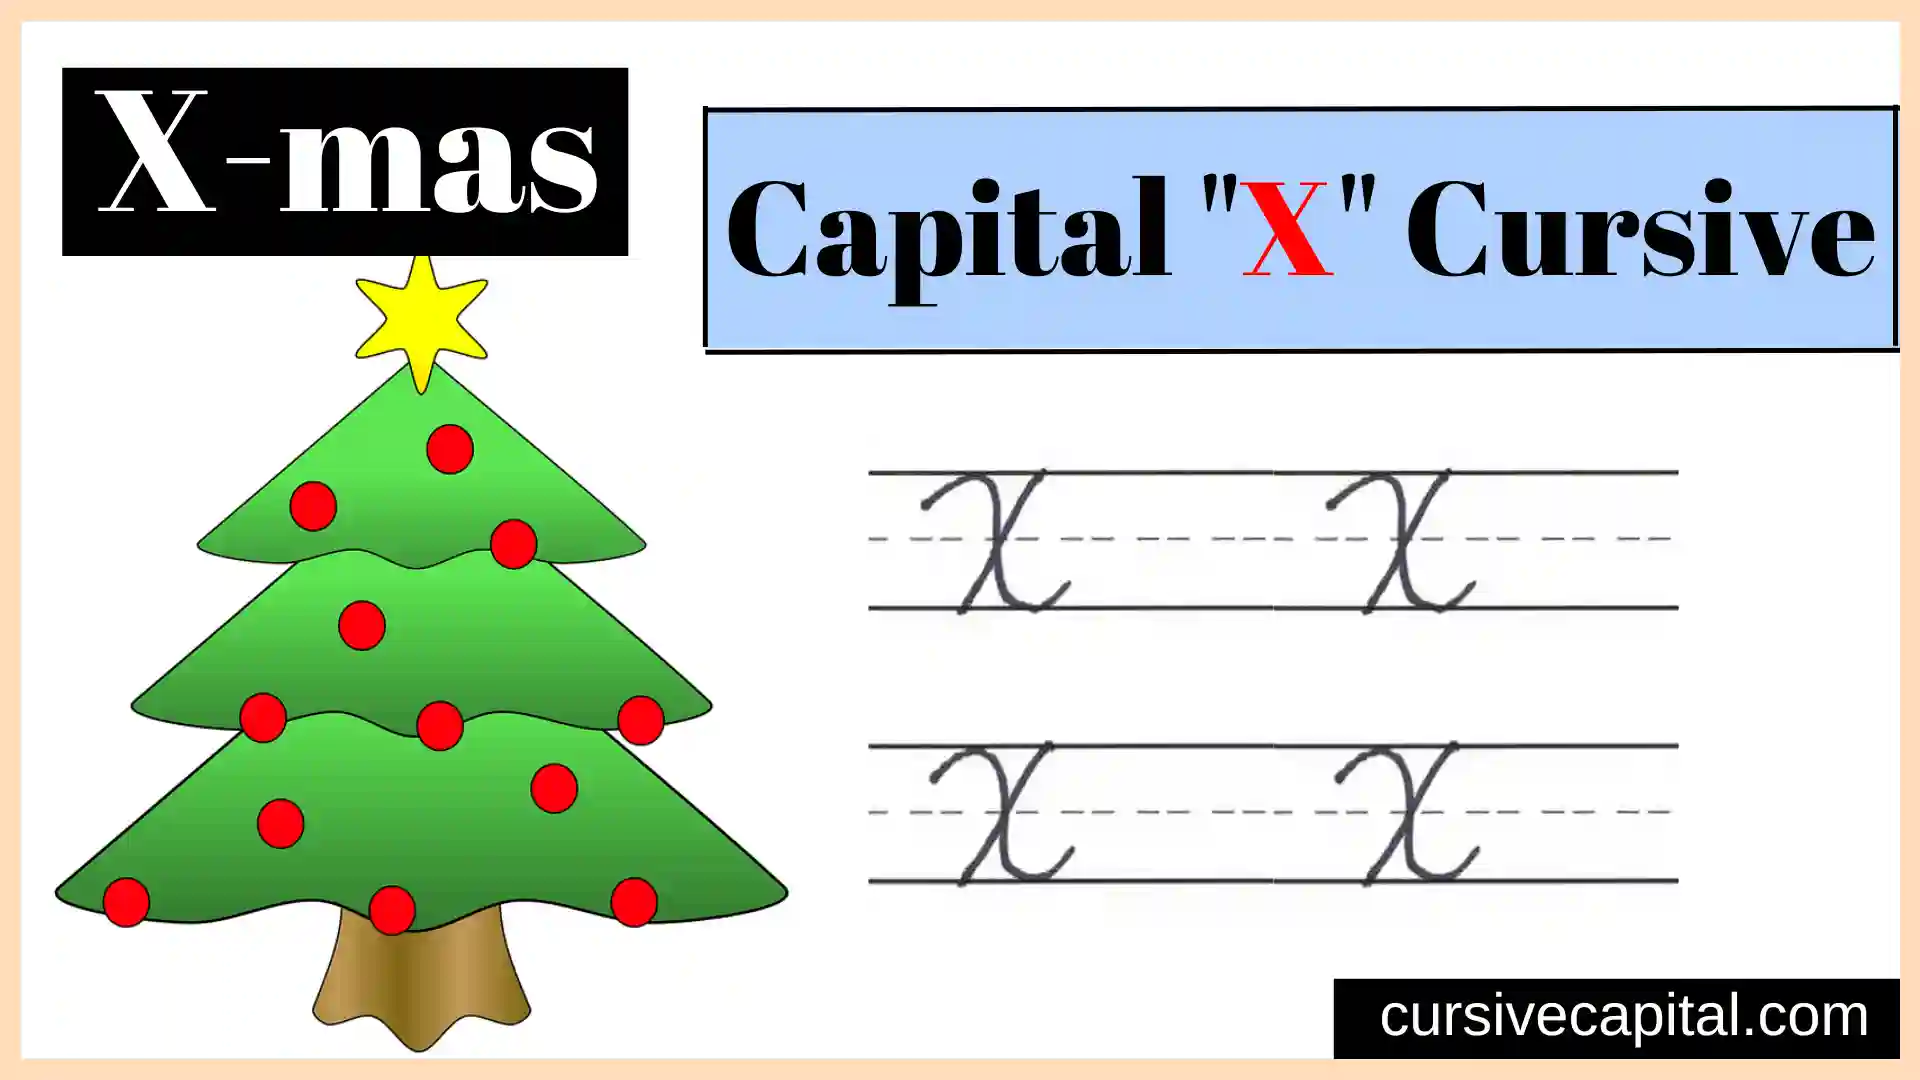 Capital X cursive